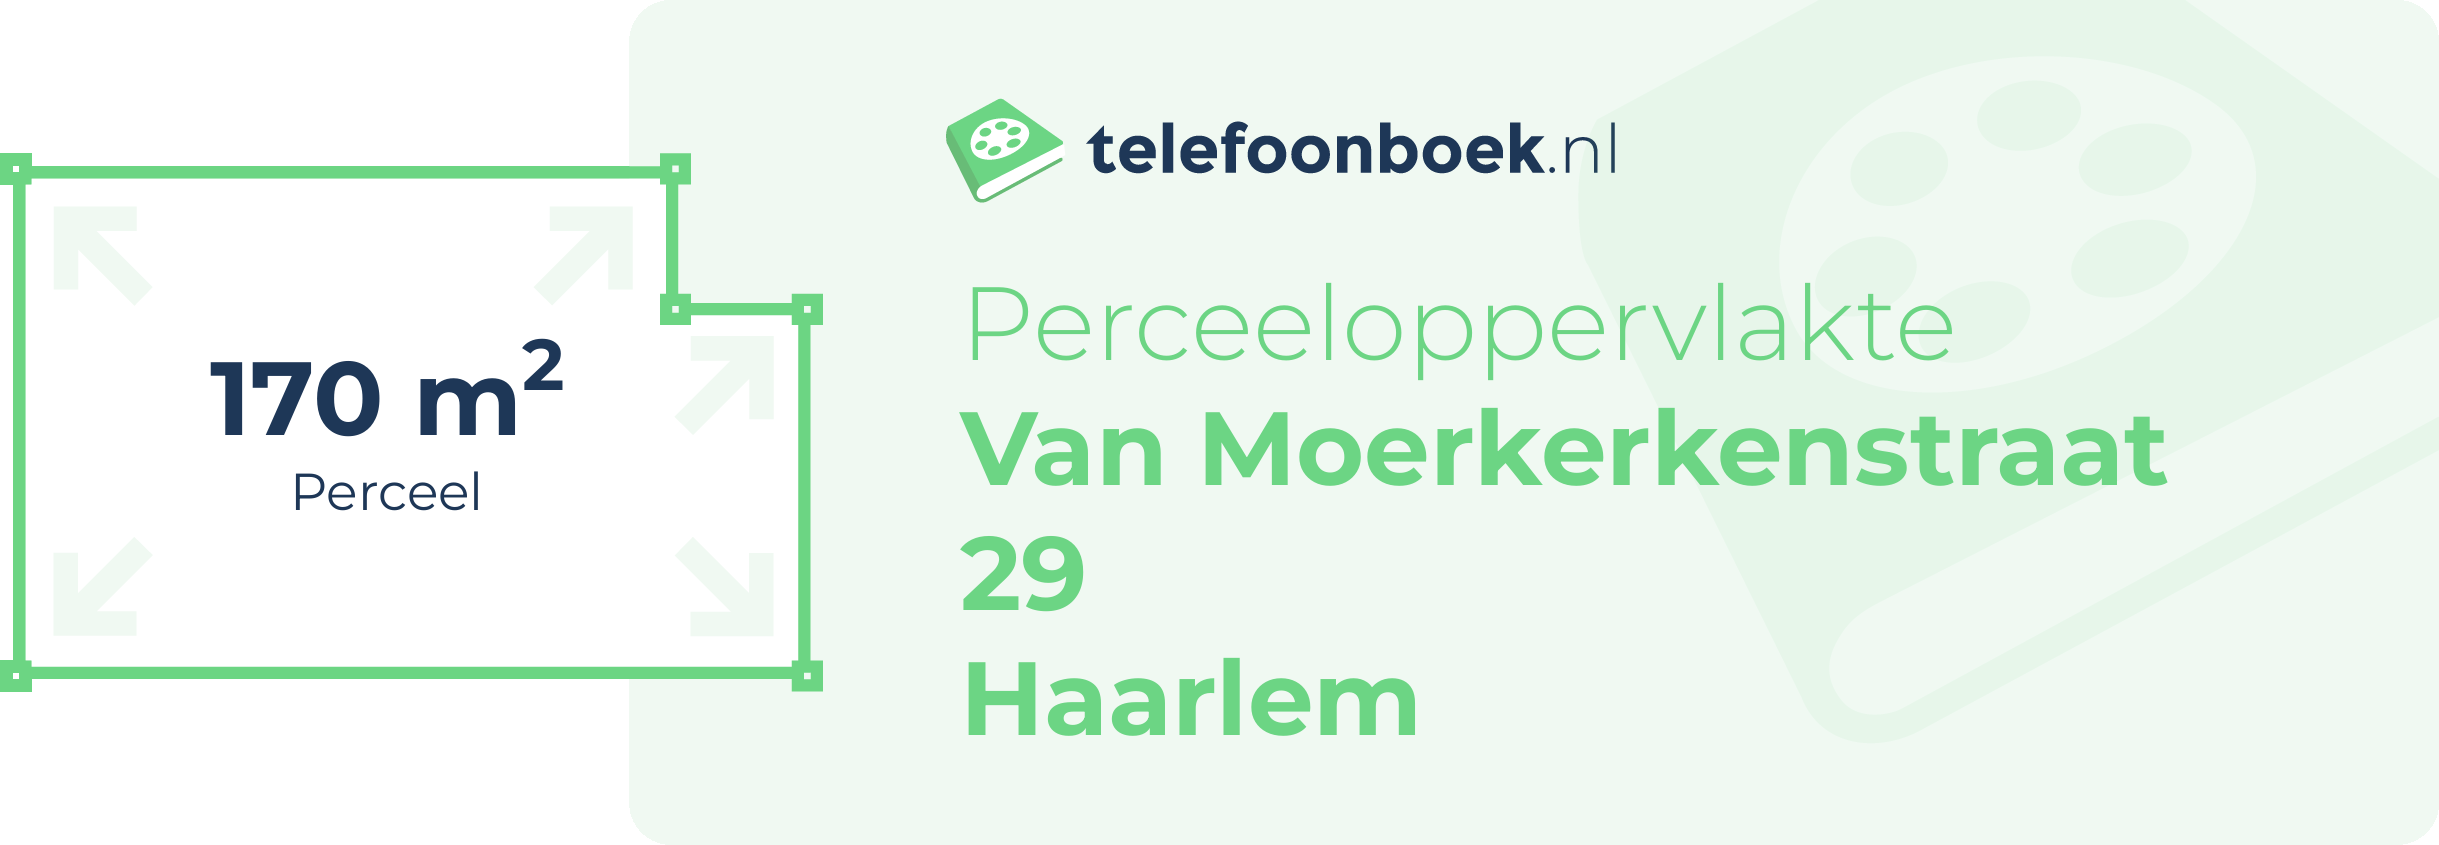 Perceeloppervlakte Van Moerkerkenstraat 29 Haarlem